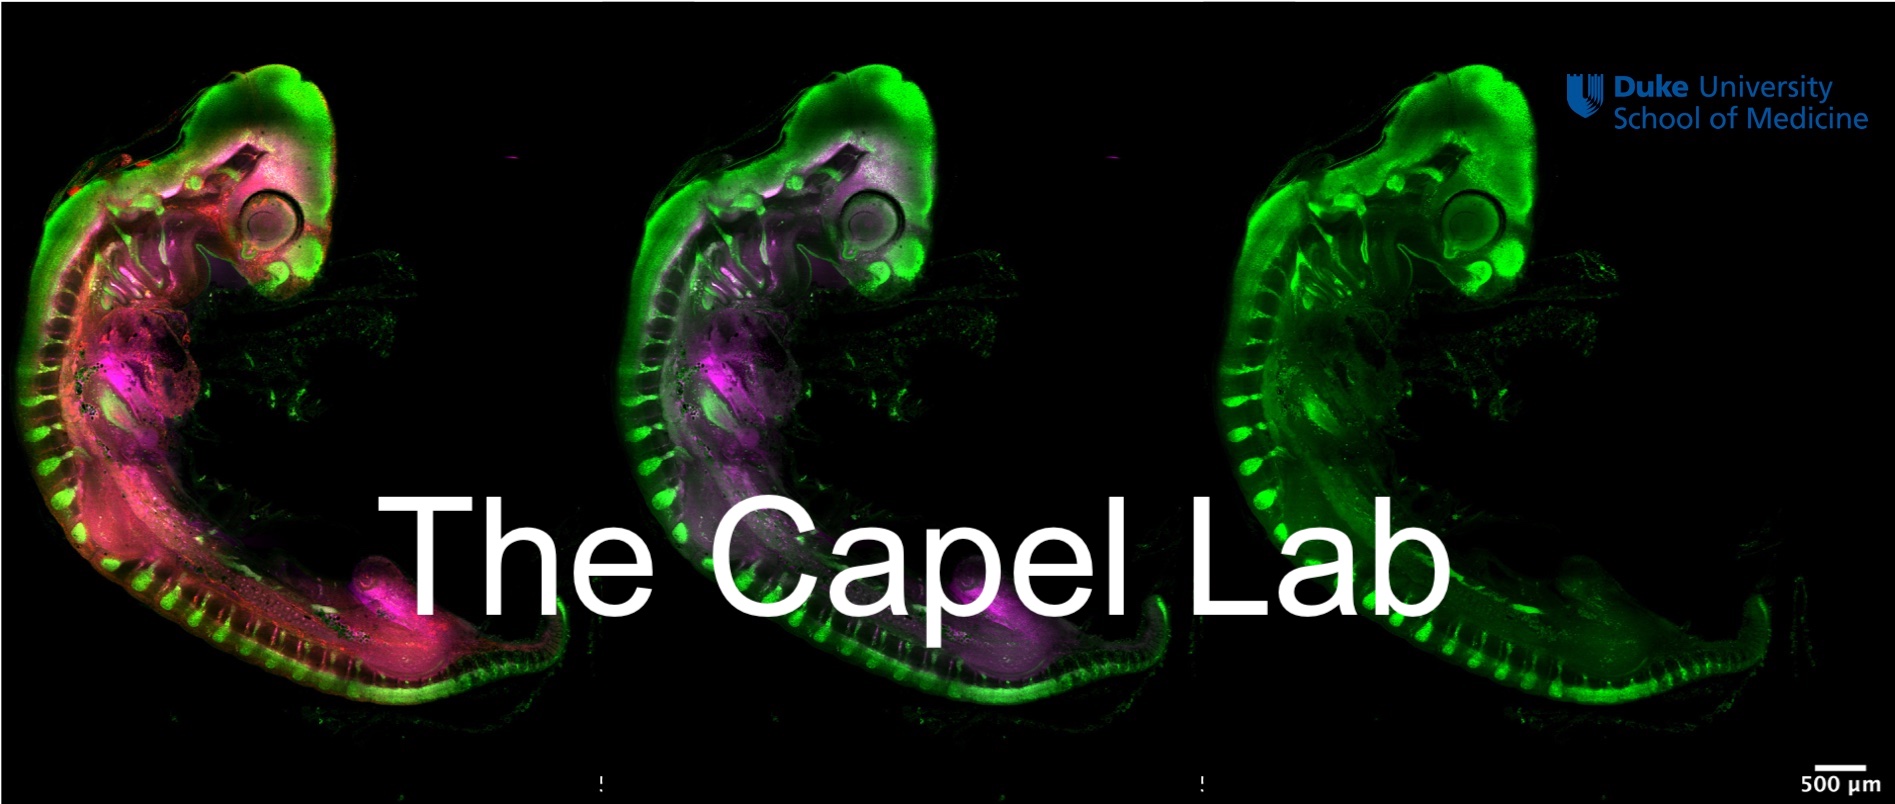 Capel Lab